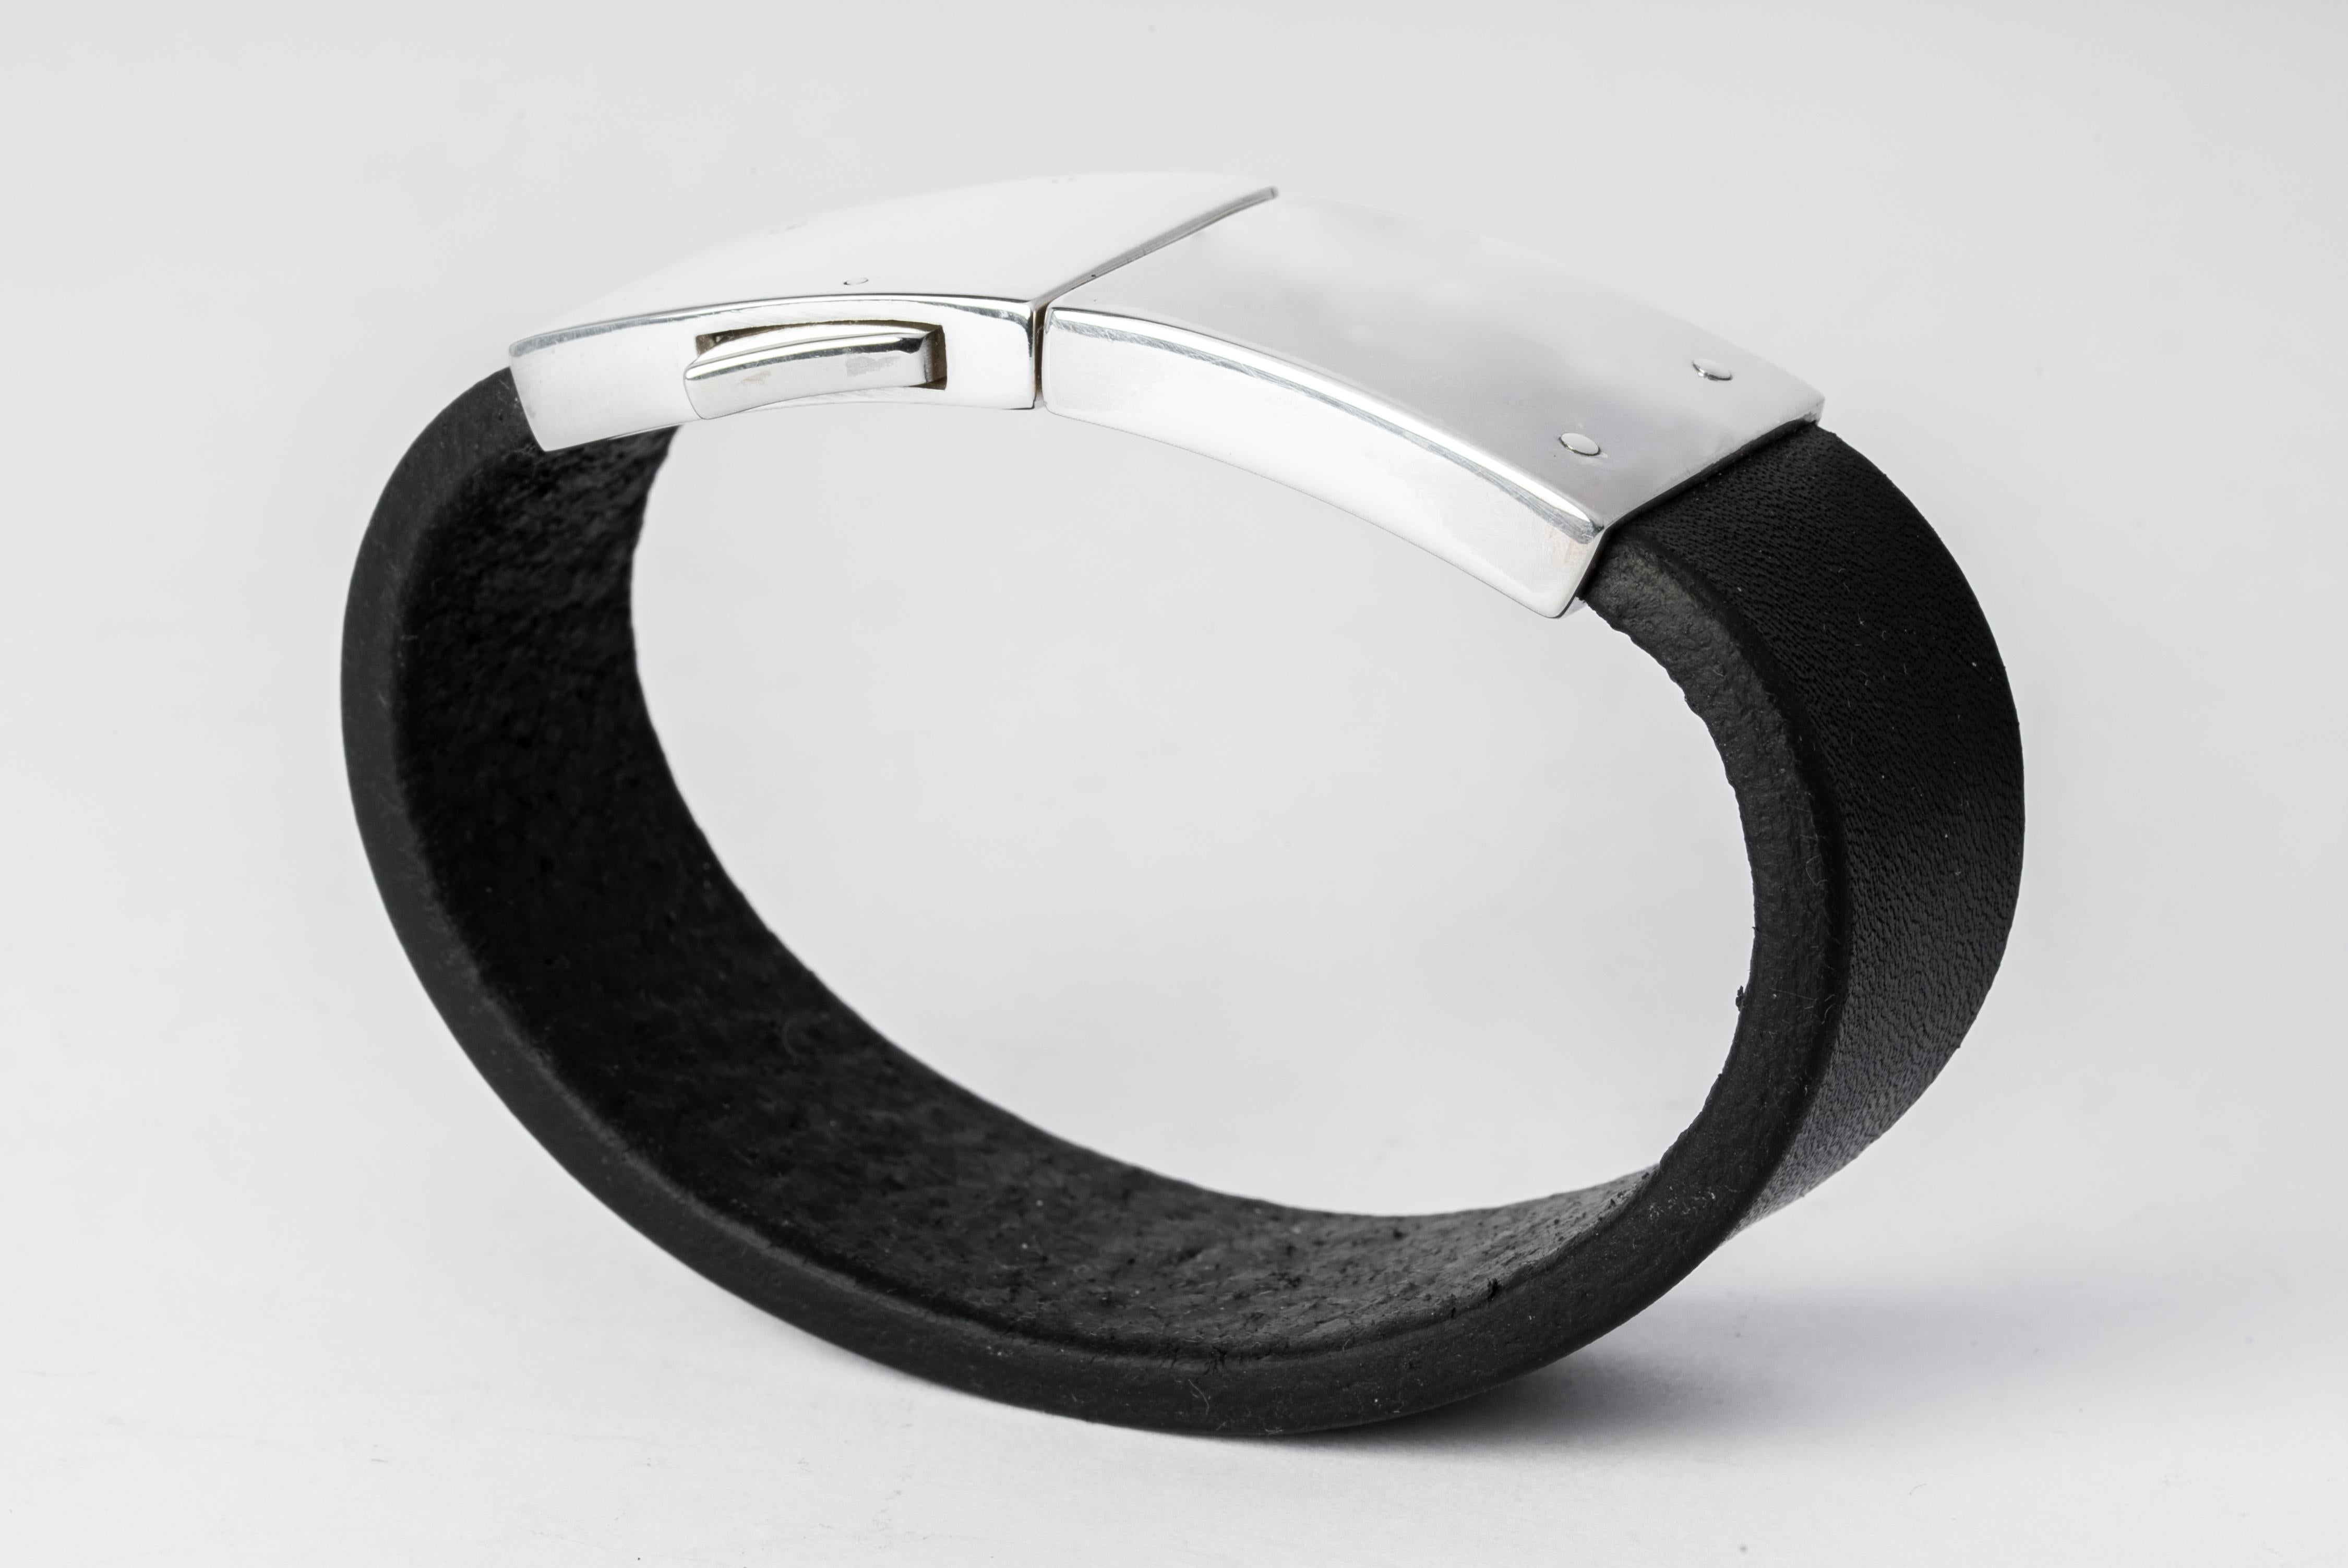 Bracelet en cuir de buffle noir et argent sterling poli.
Dimensions :
Largeur du bracelet : 25 mm
Poids : 80 grammes